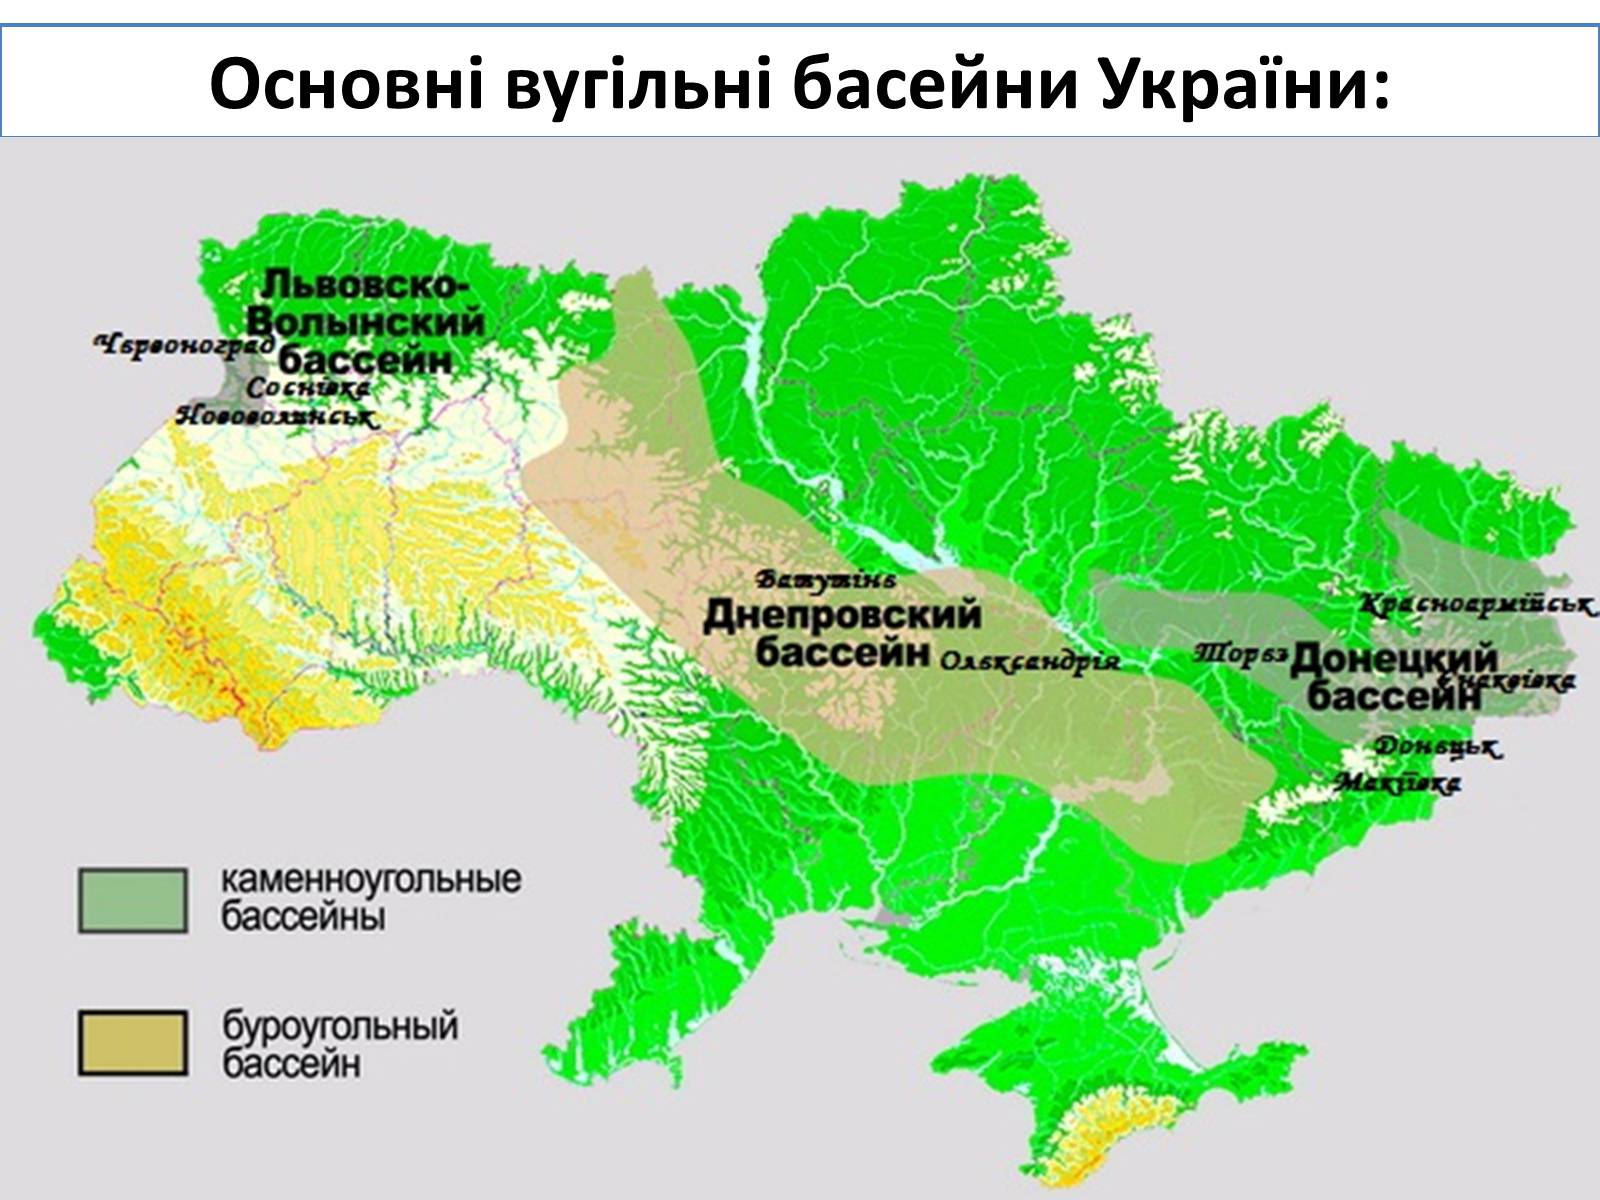 Угольные бассейны Украины на карте